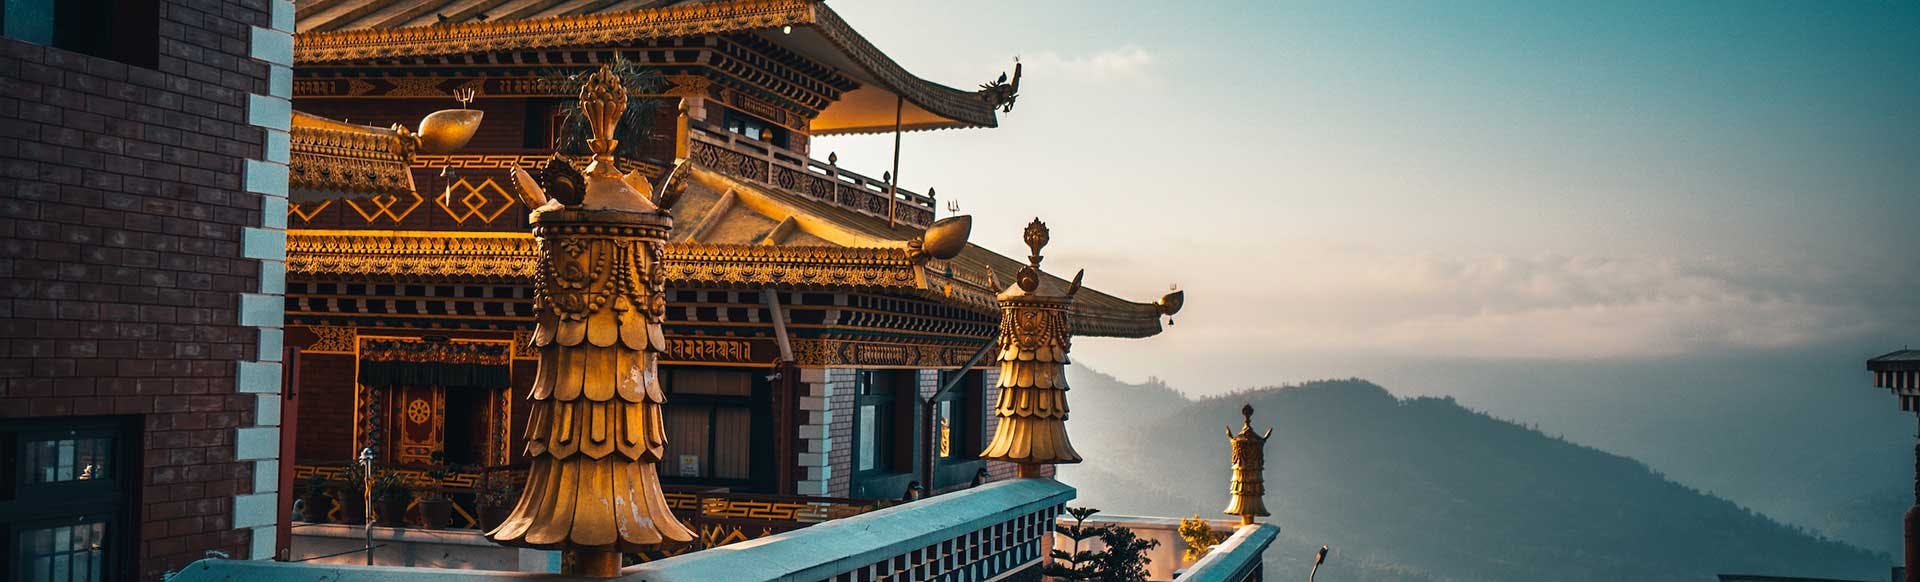 Search Hotels in Bhutan